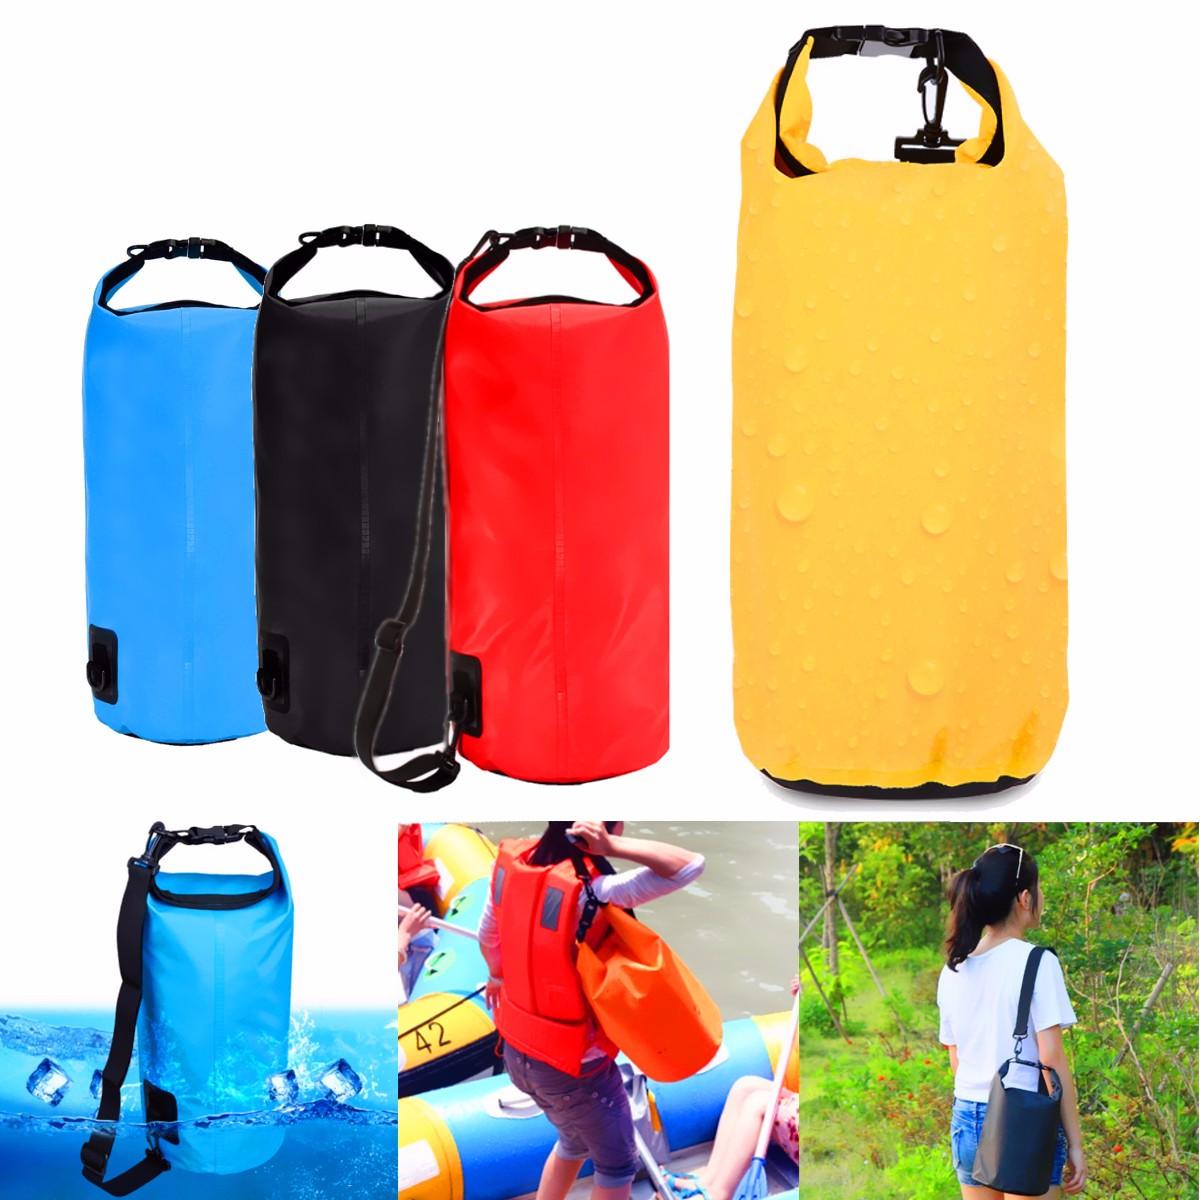 Túi chống nước dung tích 10L để lưu trữ trong cắm trại, leo núi, bơi lội, rafting, kayak